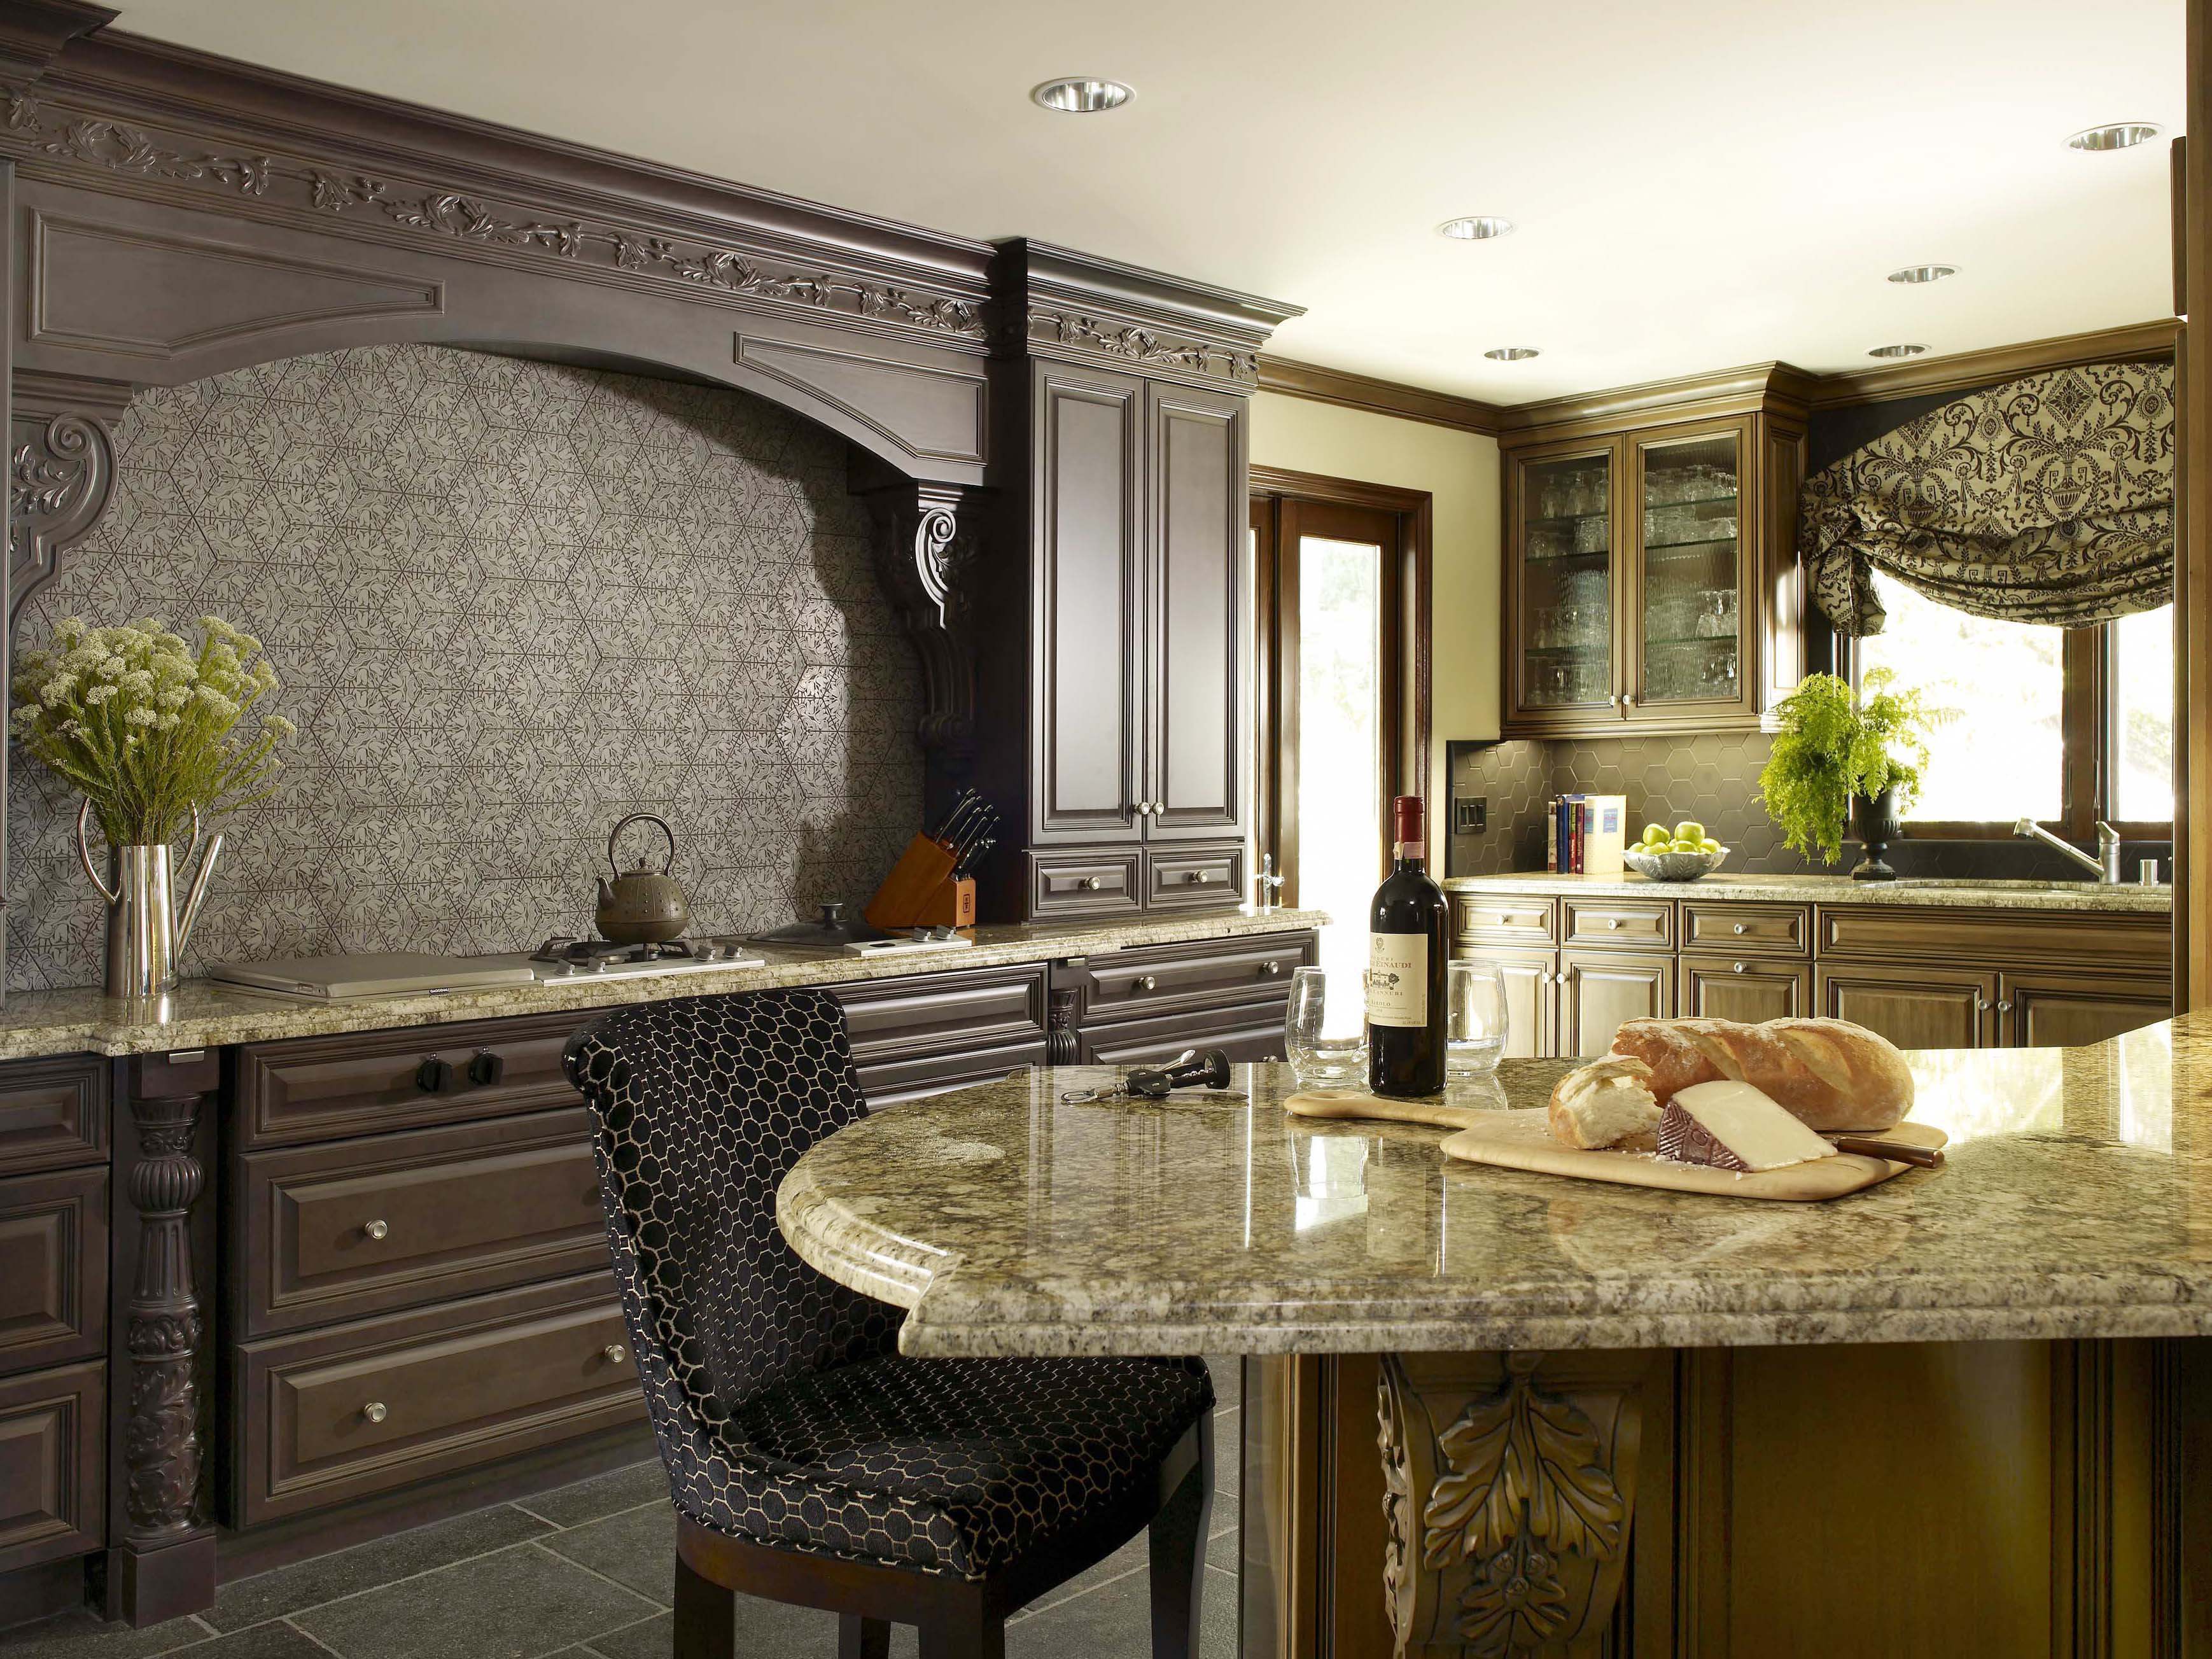 Beautiful slate kitchen countertops